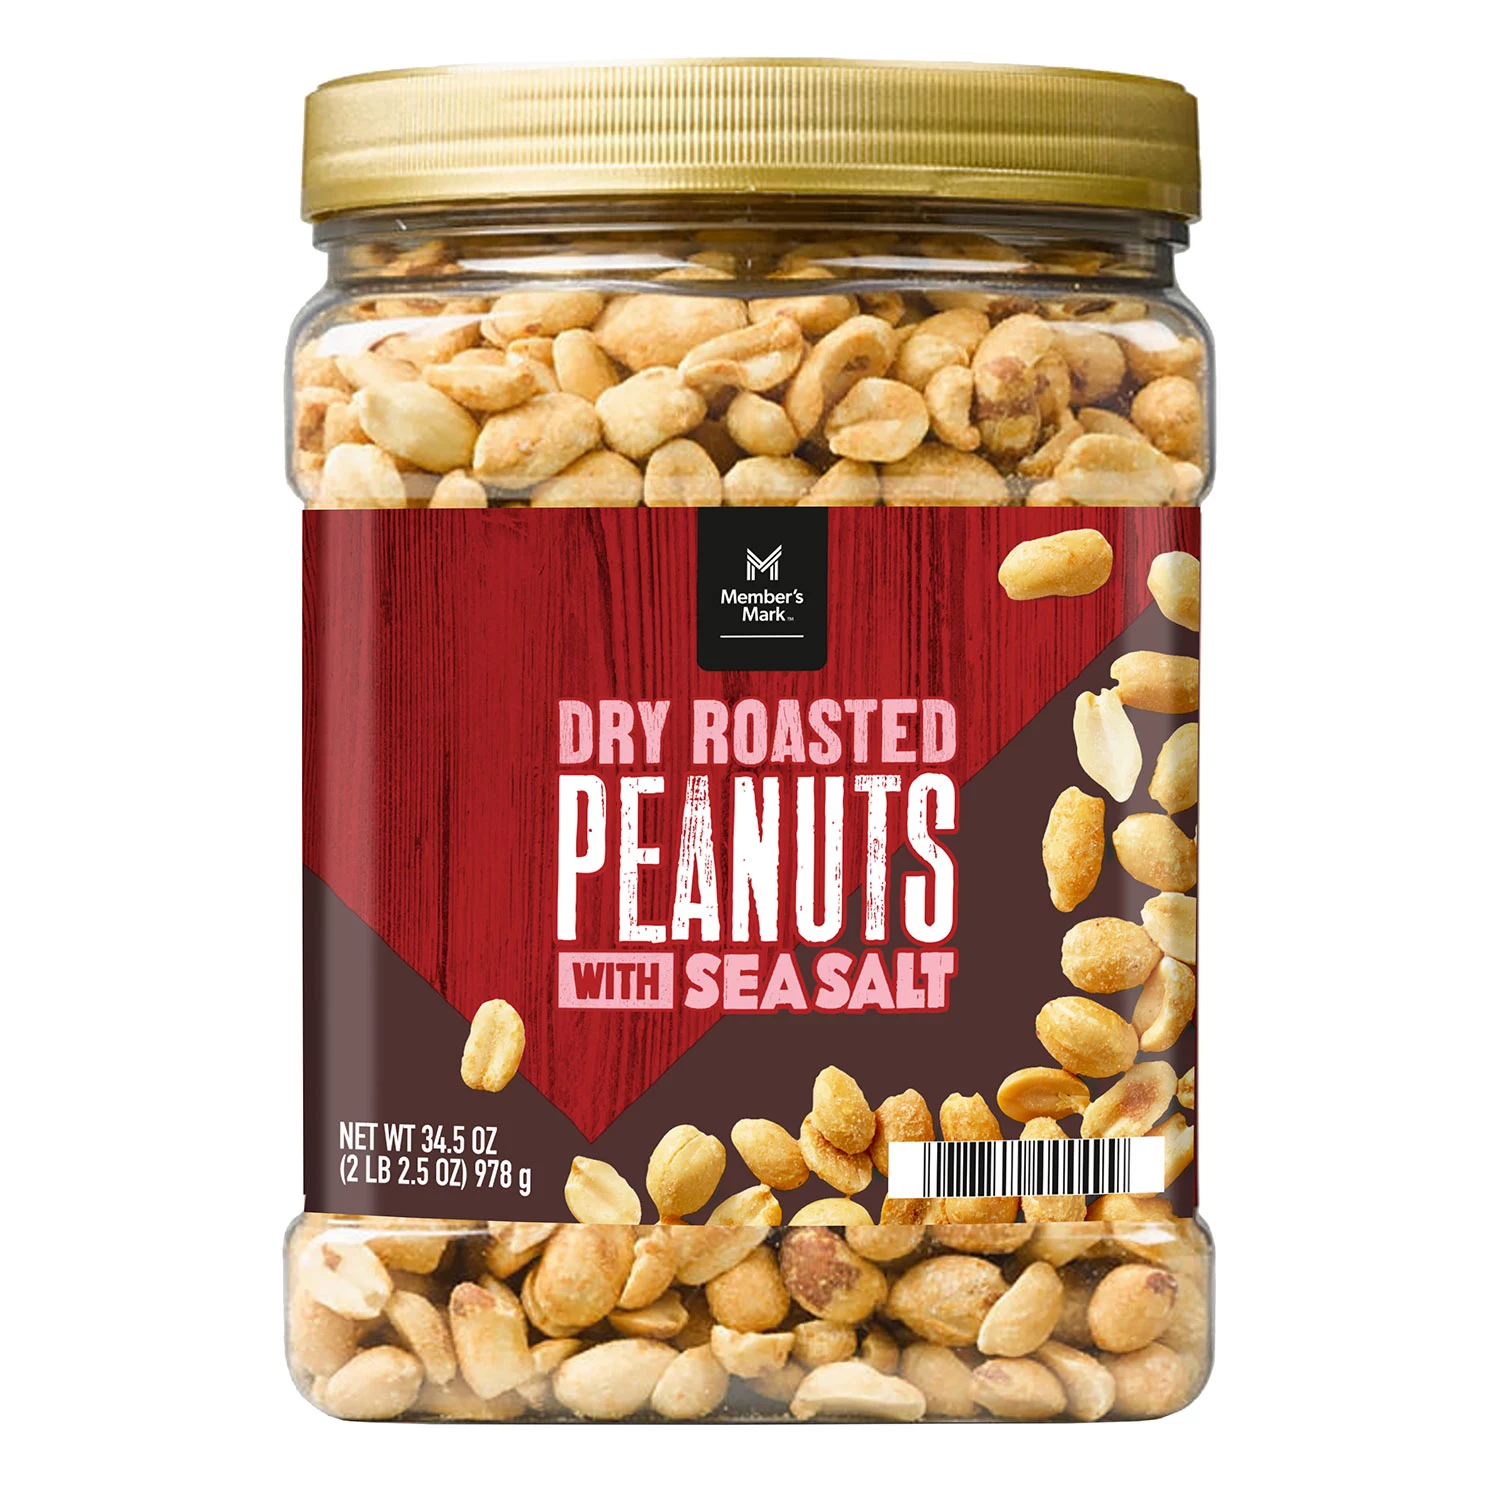 Member's Mark Dry Roasted Peanuts with Sea Salt